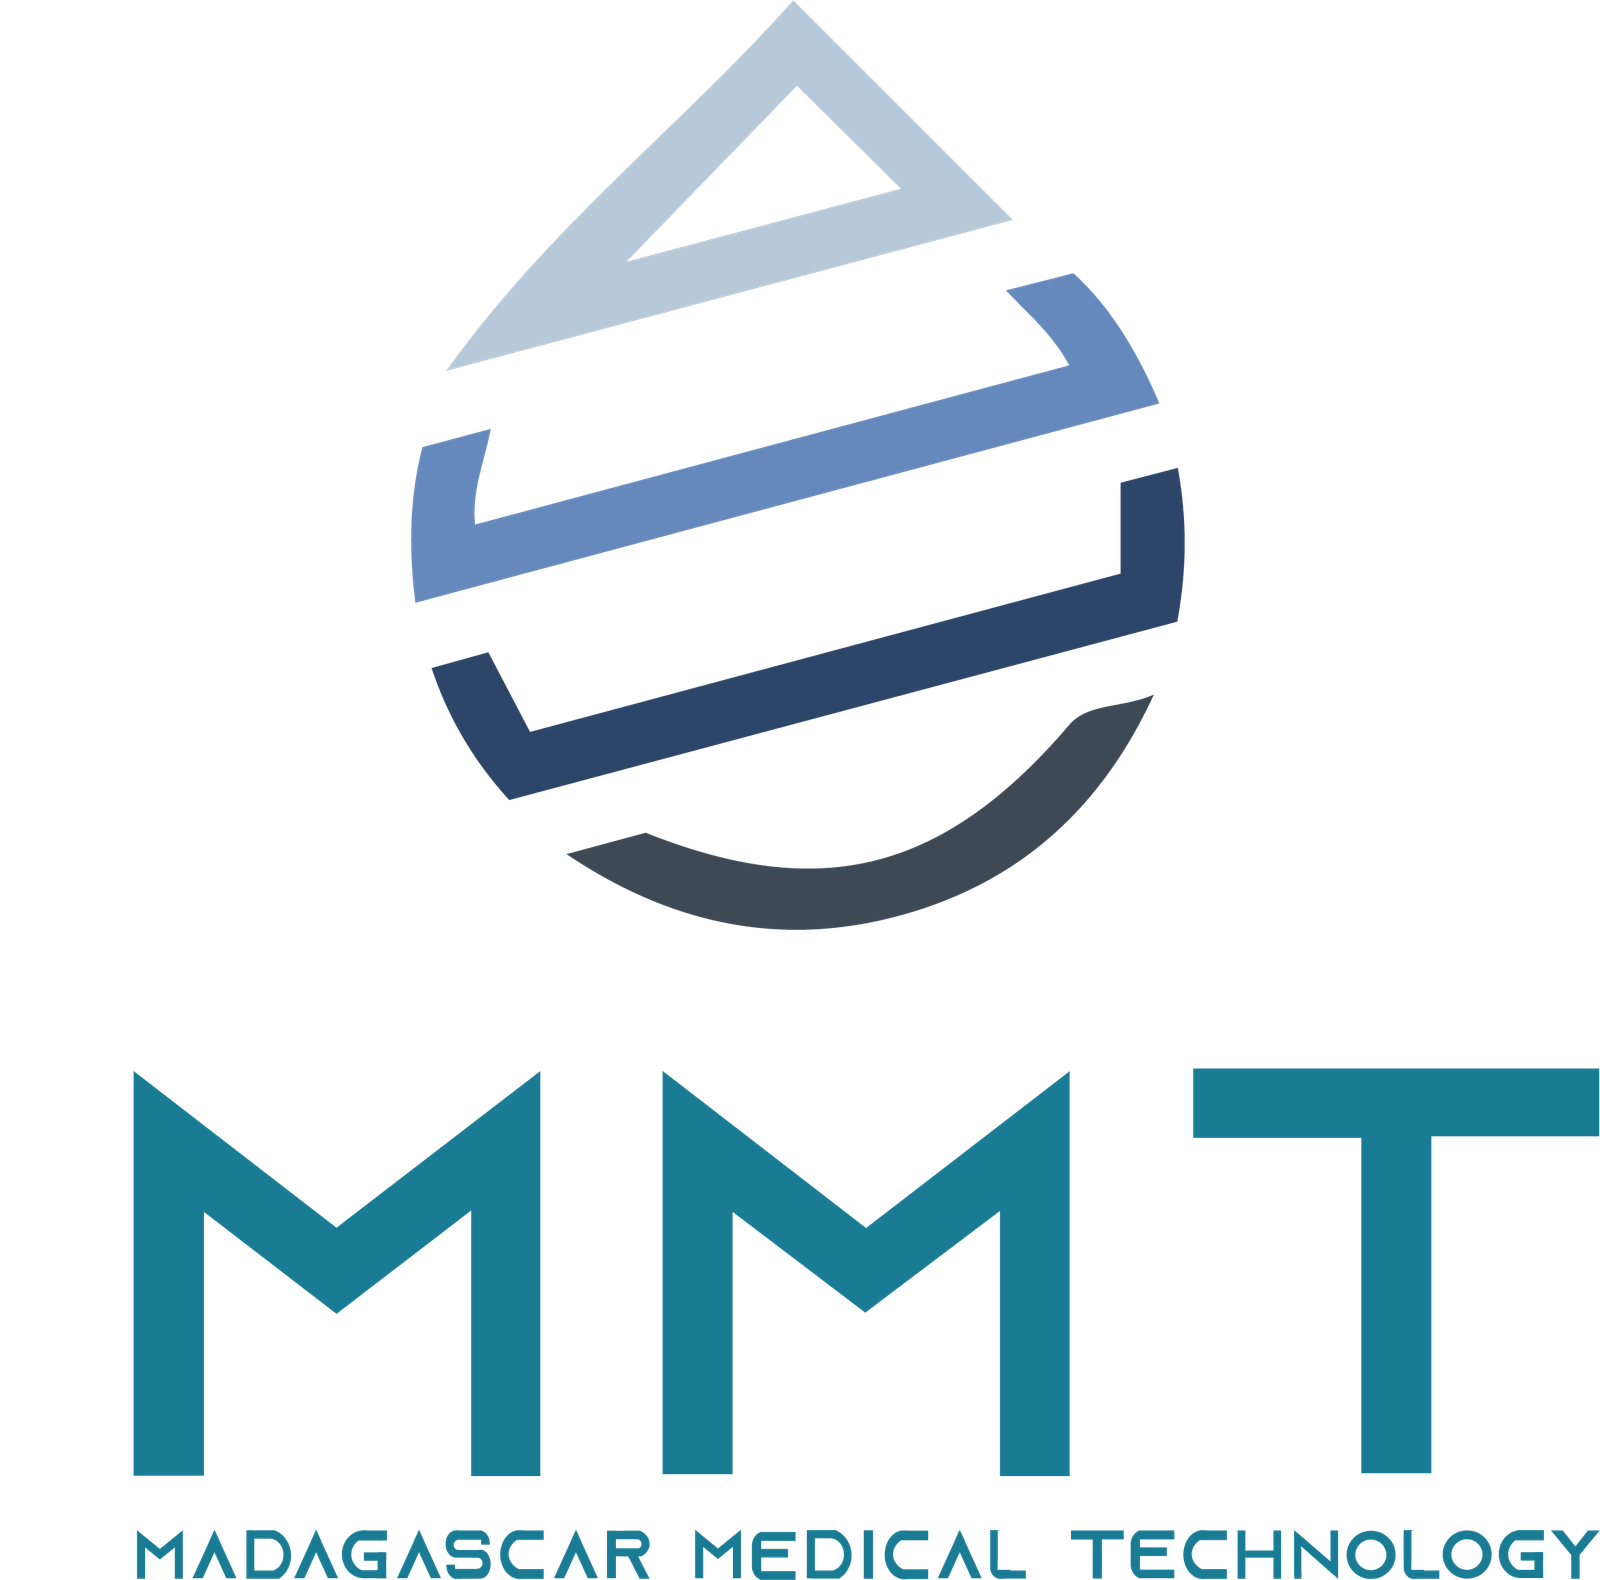 Madagascar Medical Technology - logo